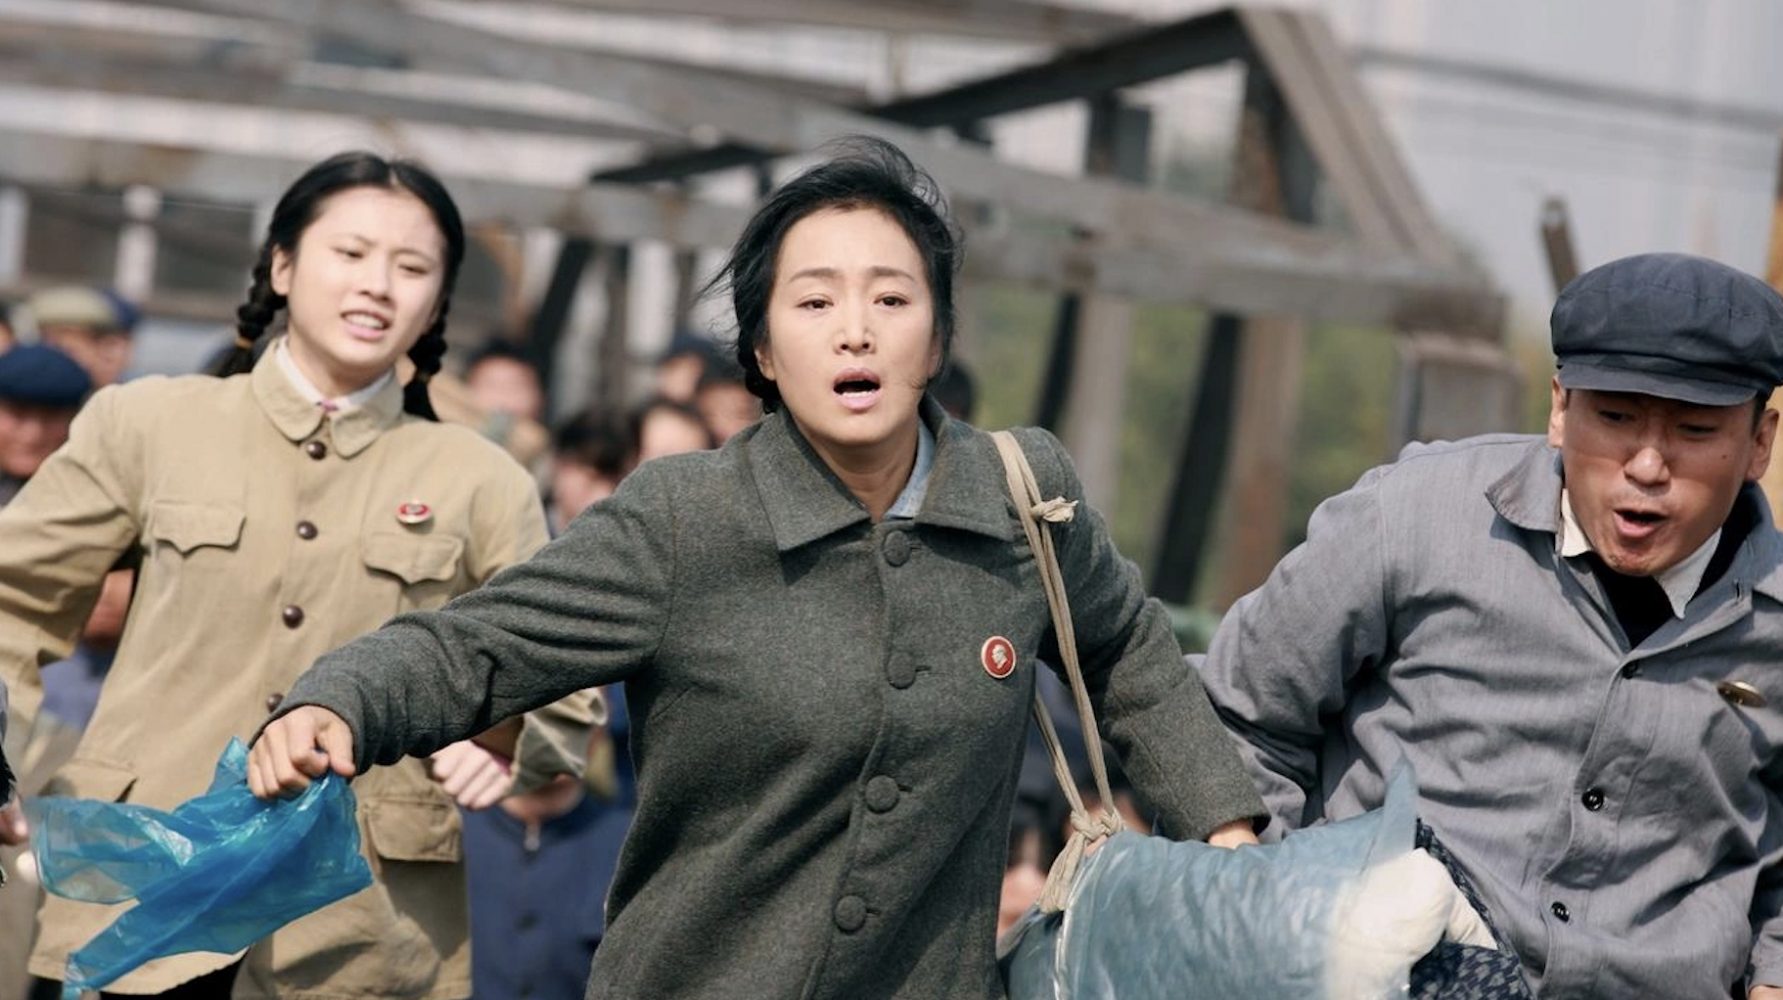 Phim của Trương Nghệ Mưu: Trở về – Coming home (2014)